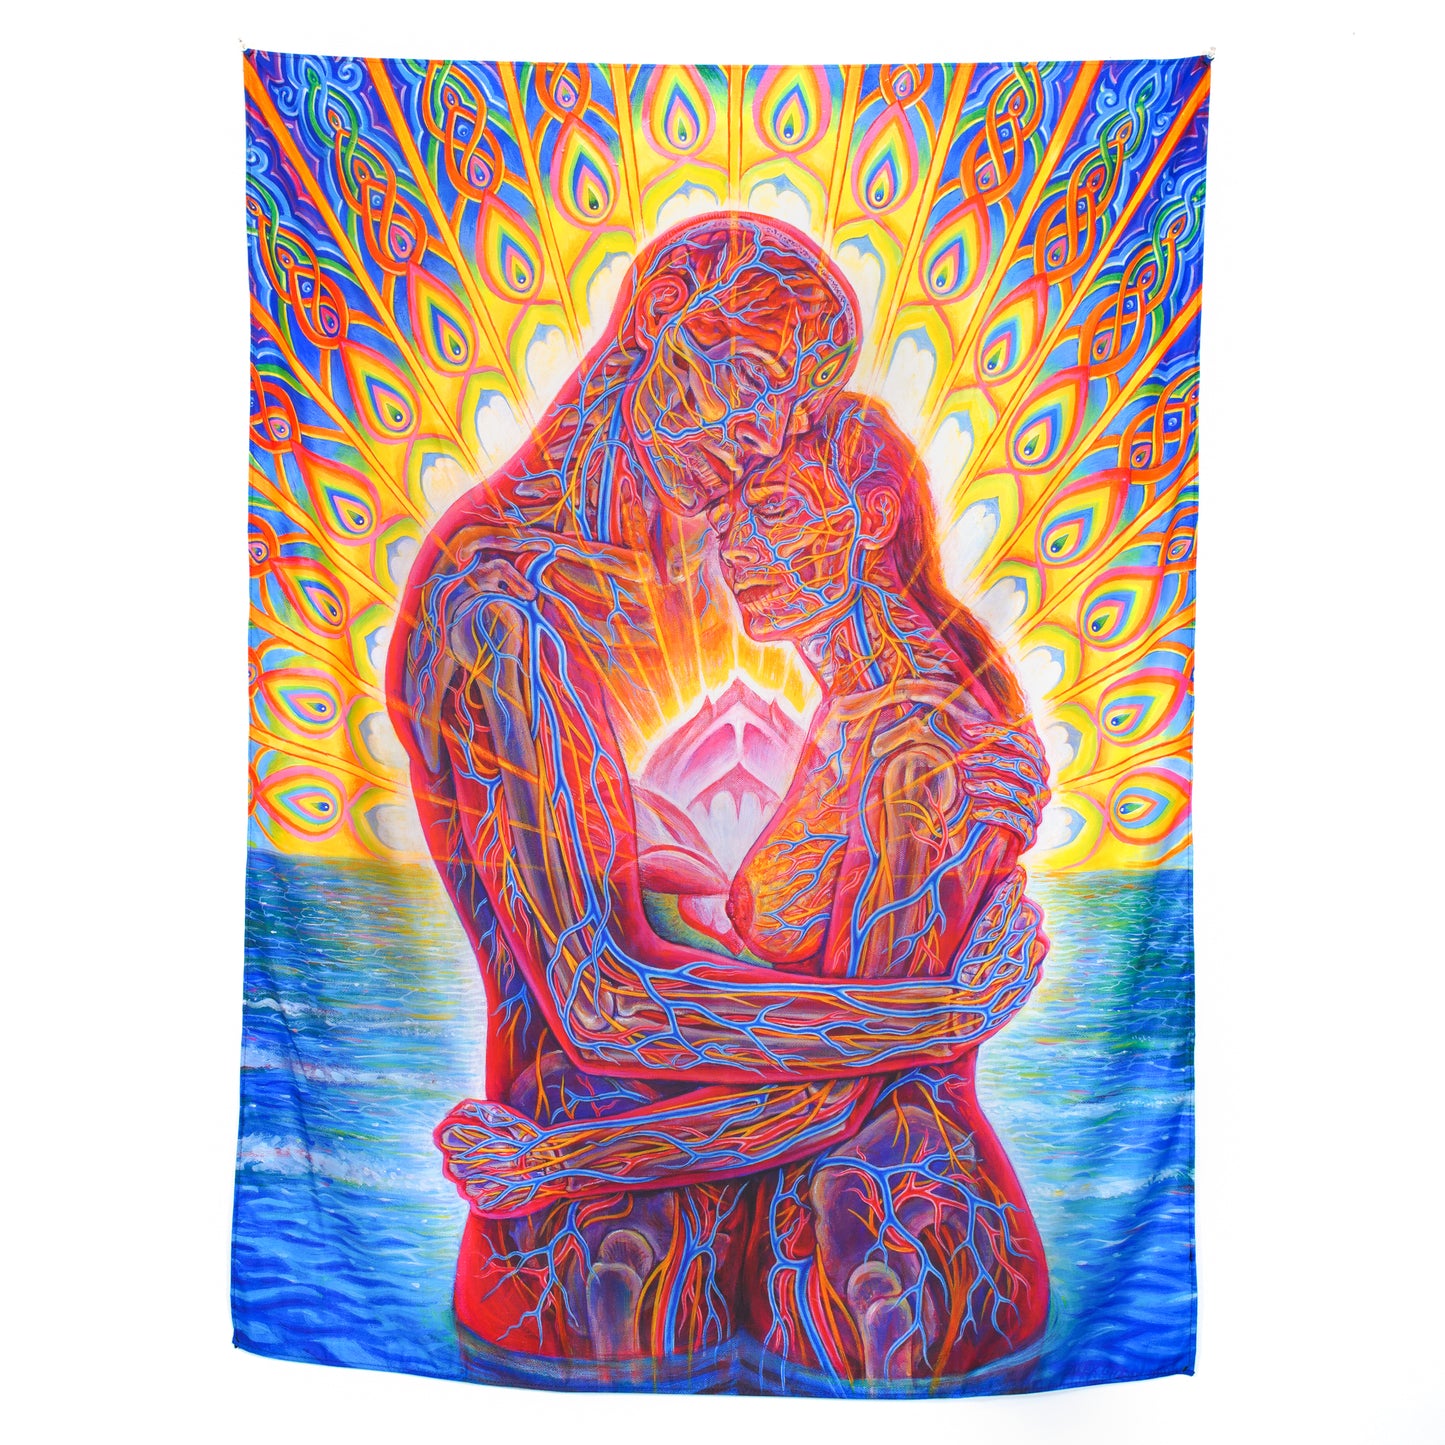 Ocean of Love Bliss - Tapestry